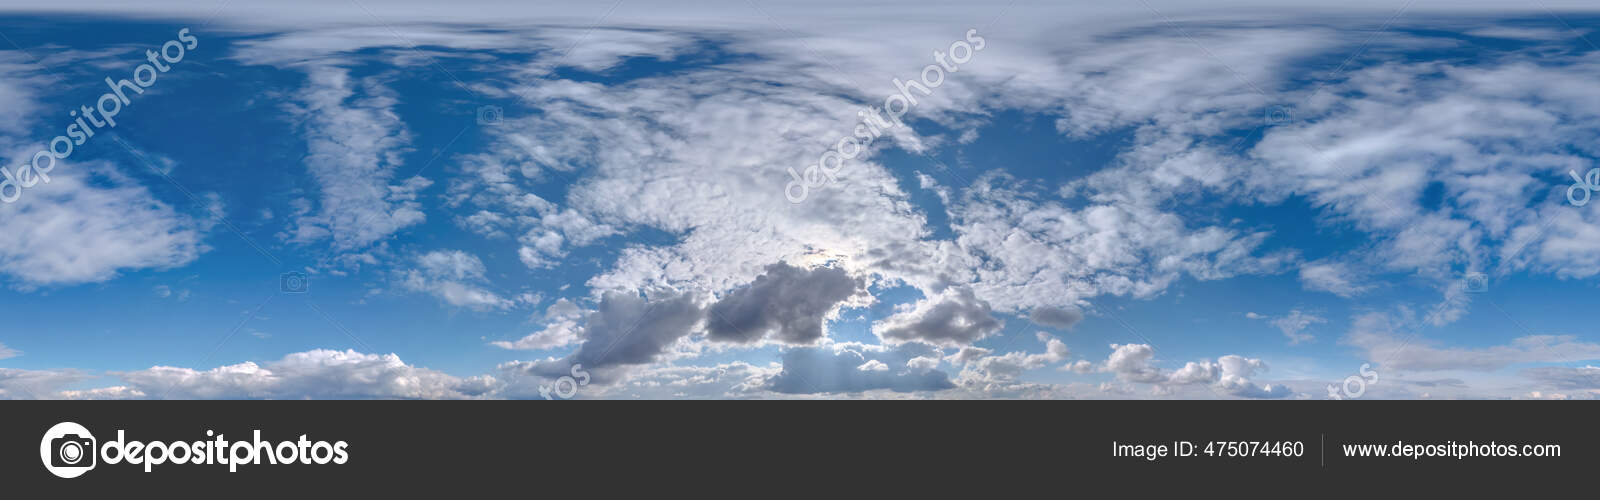 Céu azul com nuvens cumulus como panorama hdri 360 sem costura com